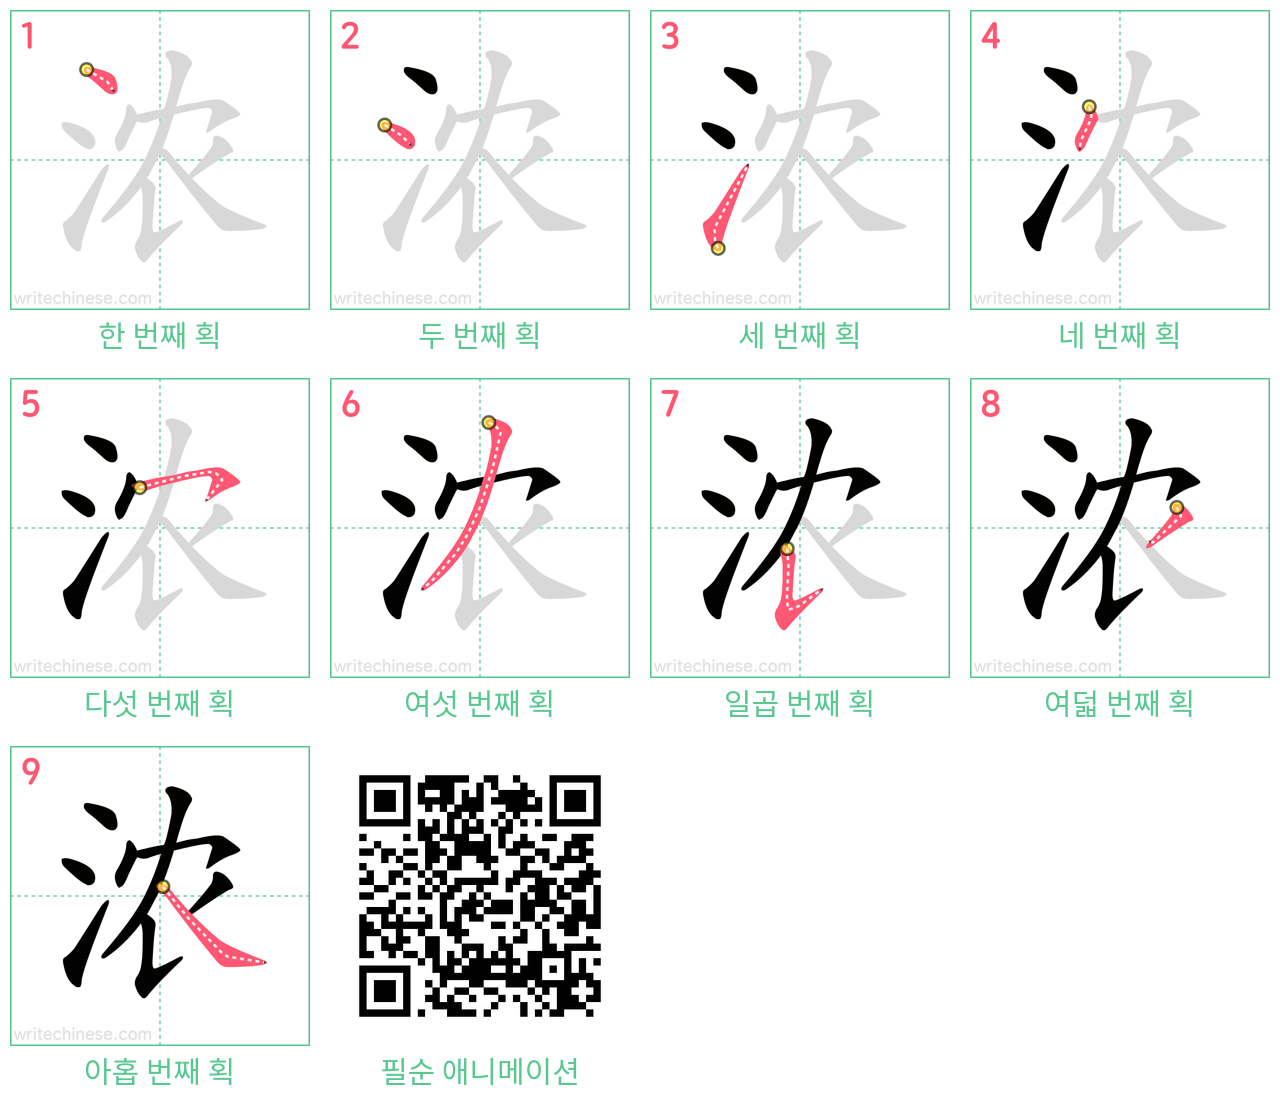 浓 step-by-step stroke order diagrams